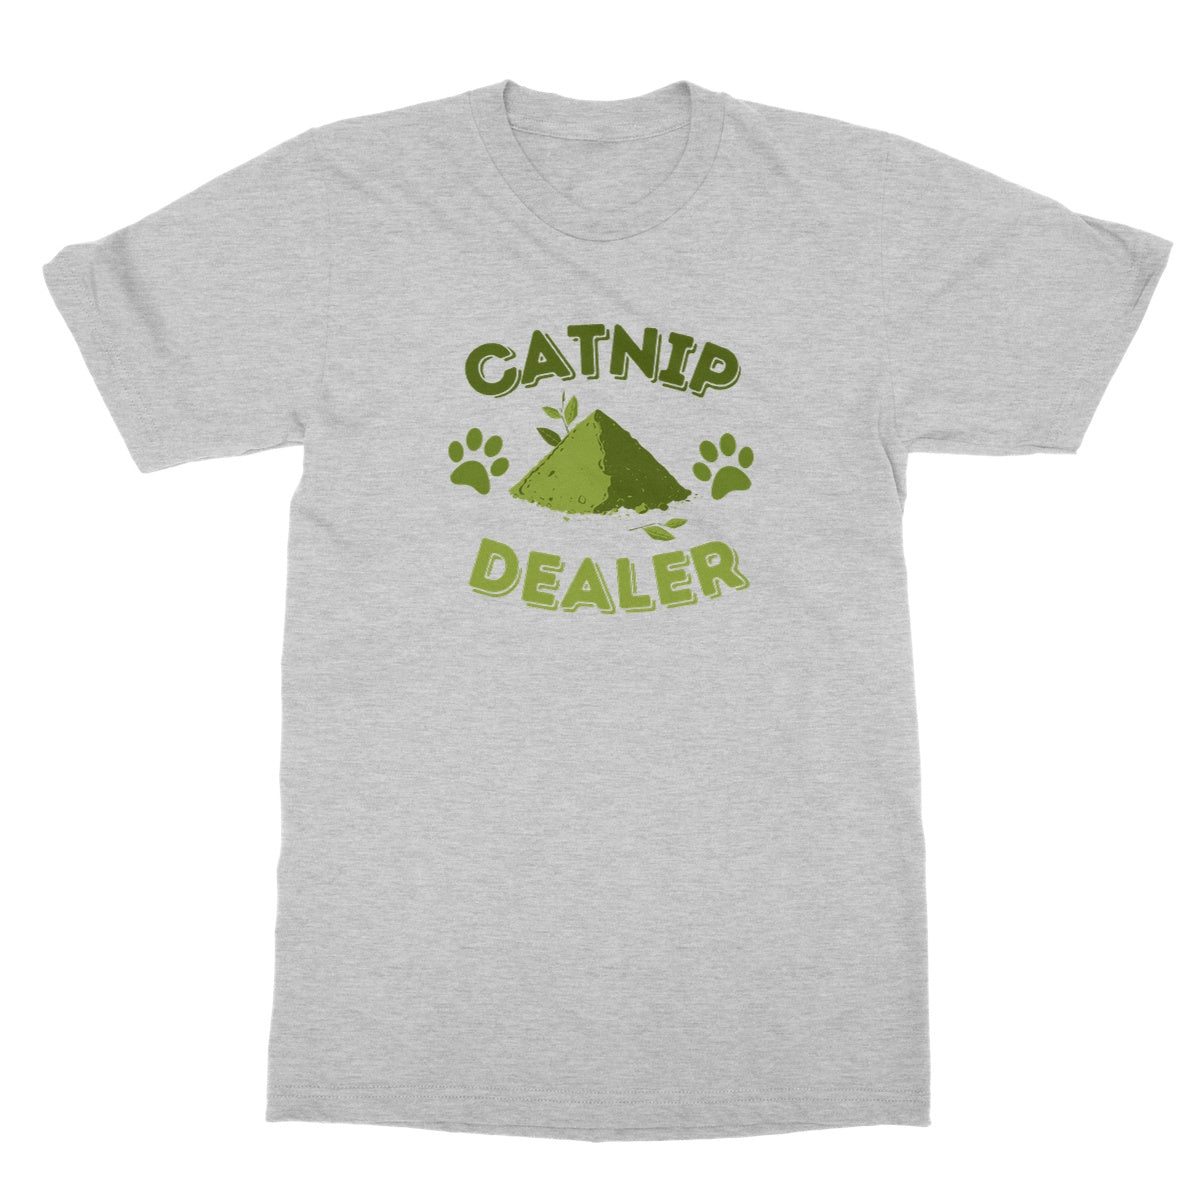 catnip dealer t shirt grey